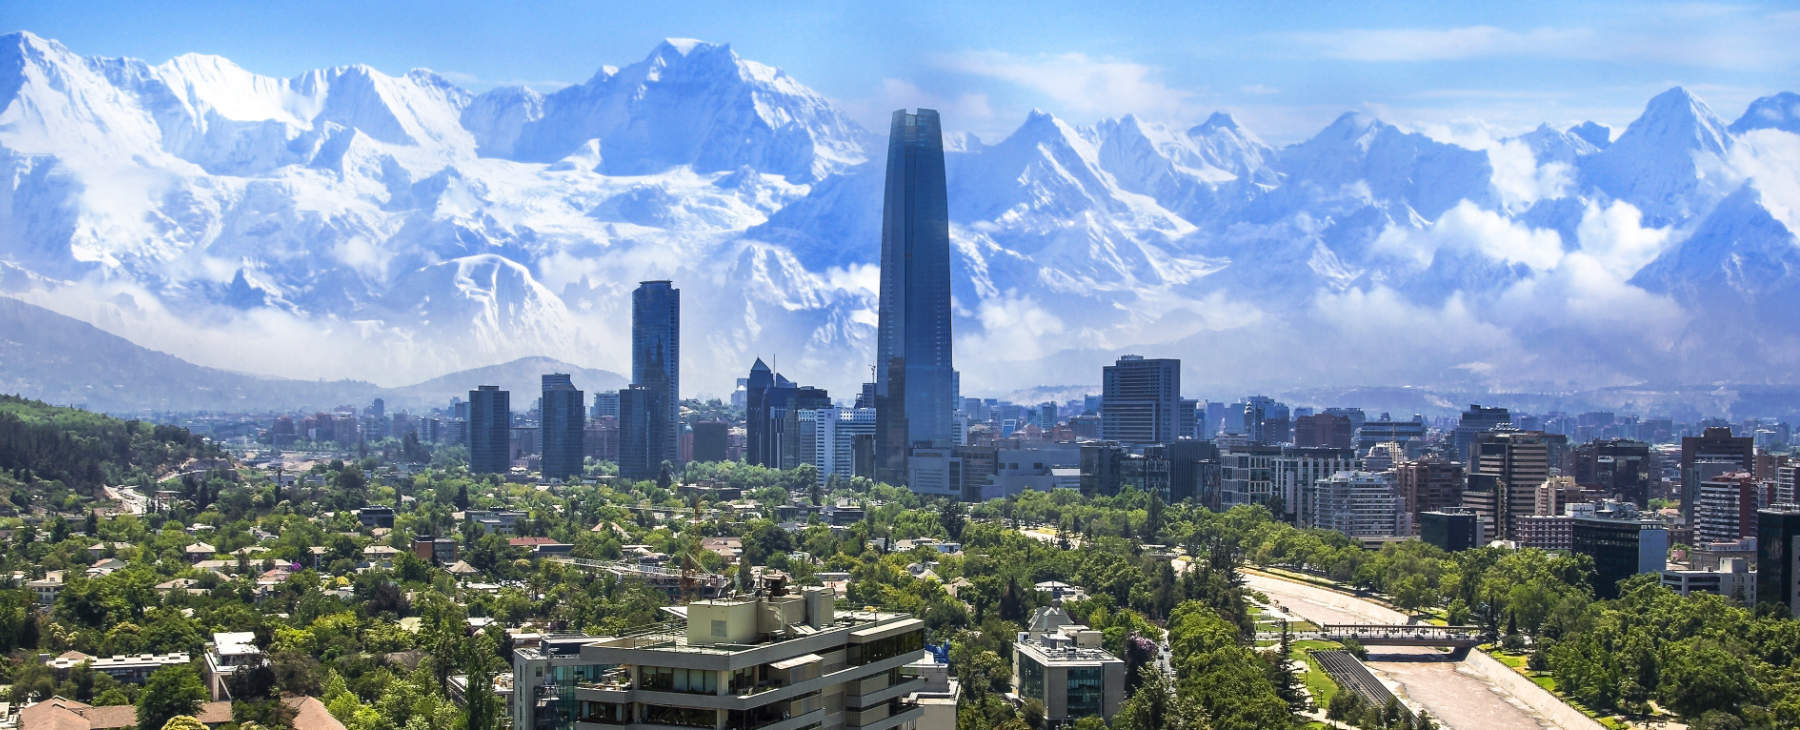 Luxusreise Chile Santiago (1)